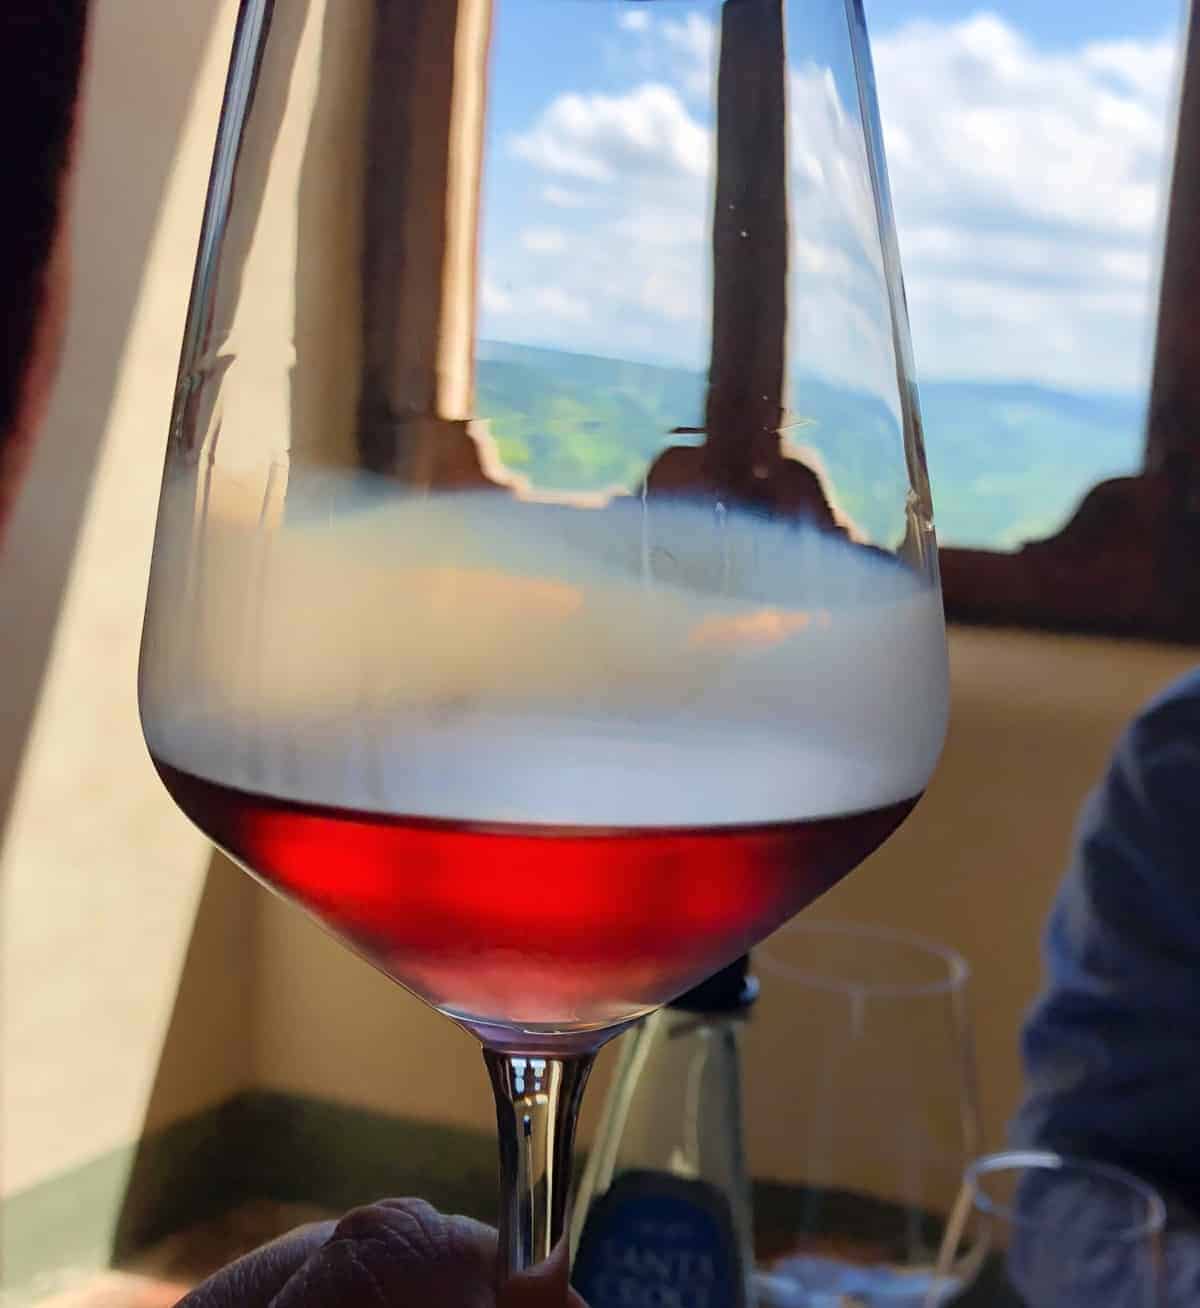 cerasuolo d'Abruzzo in a glass.